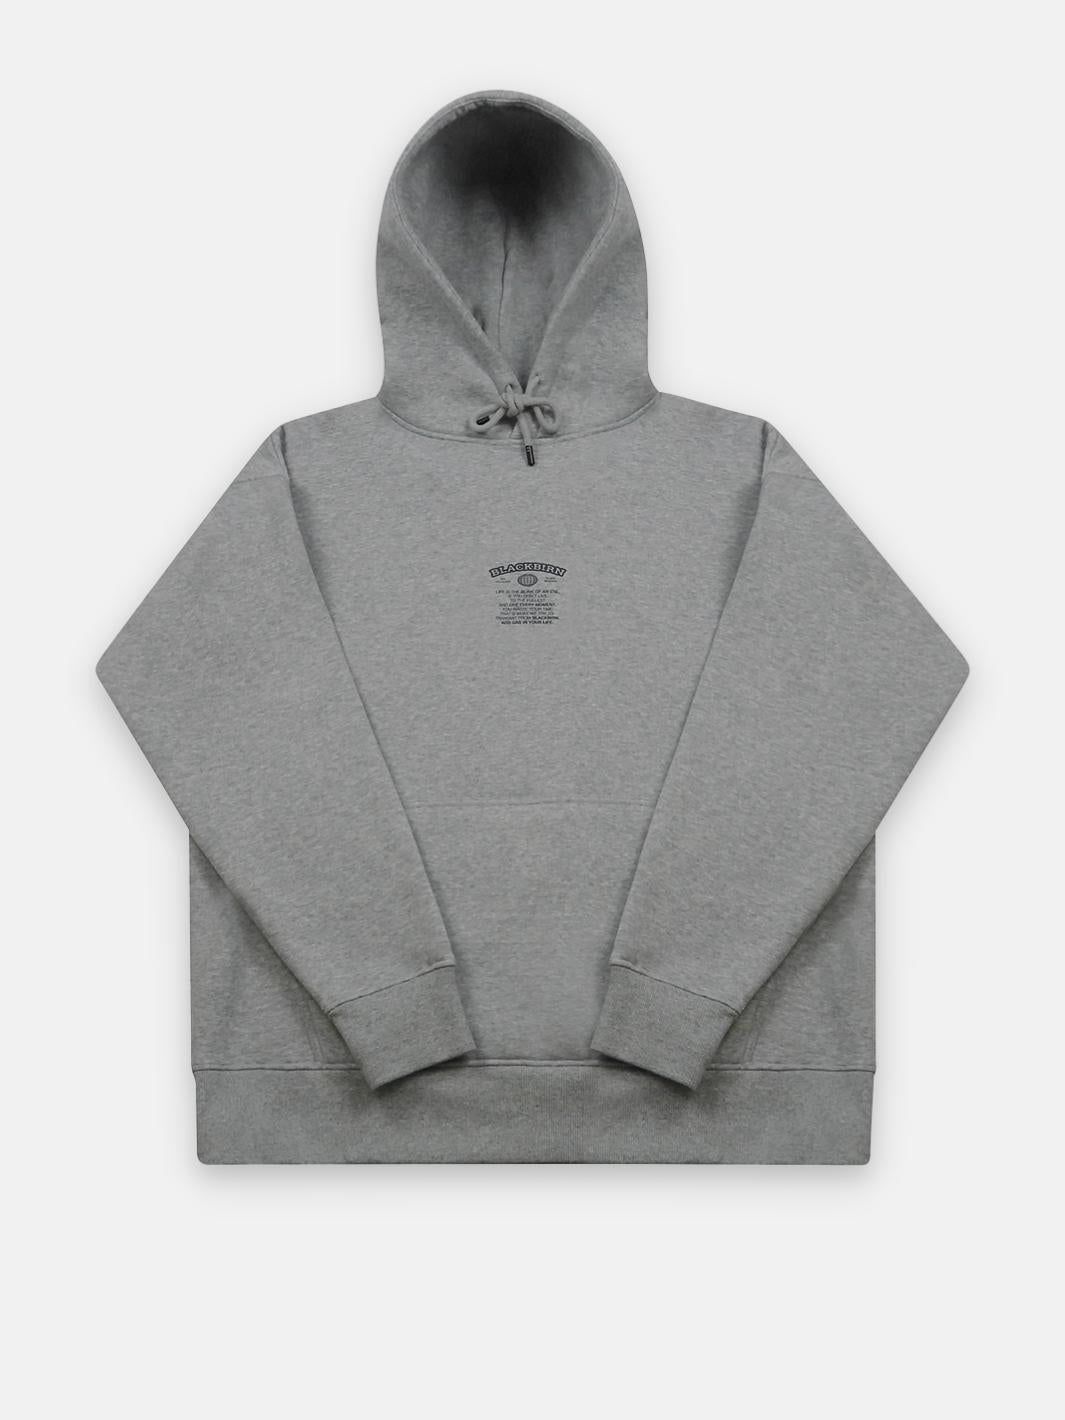 Hose Flower grey hoodie - Blackbirn